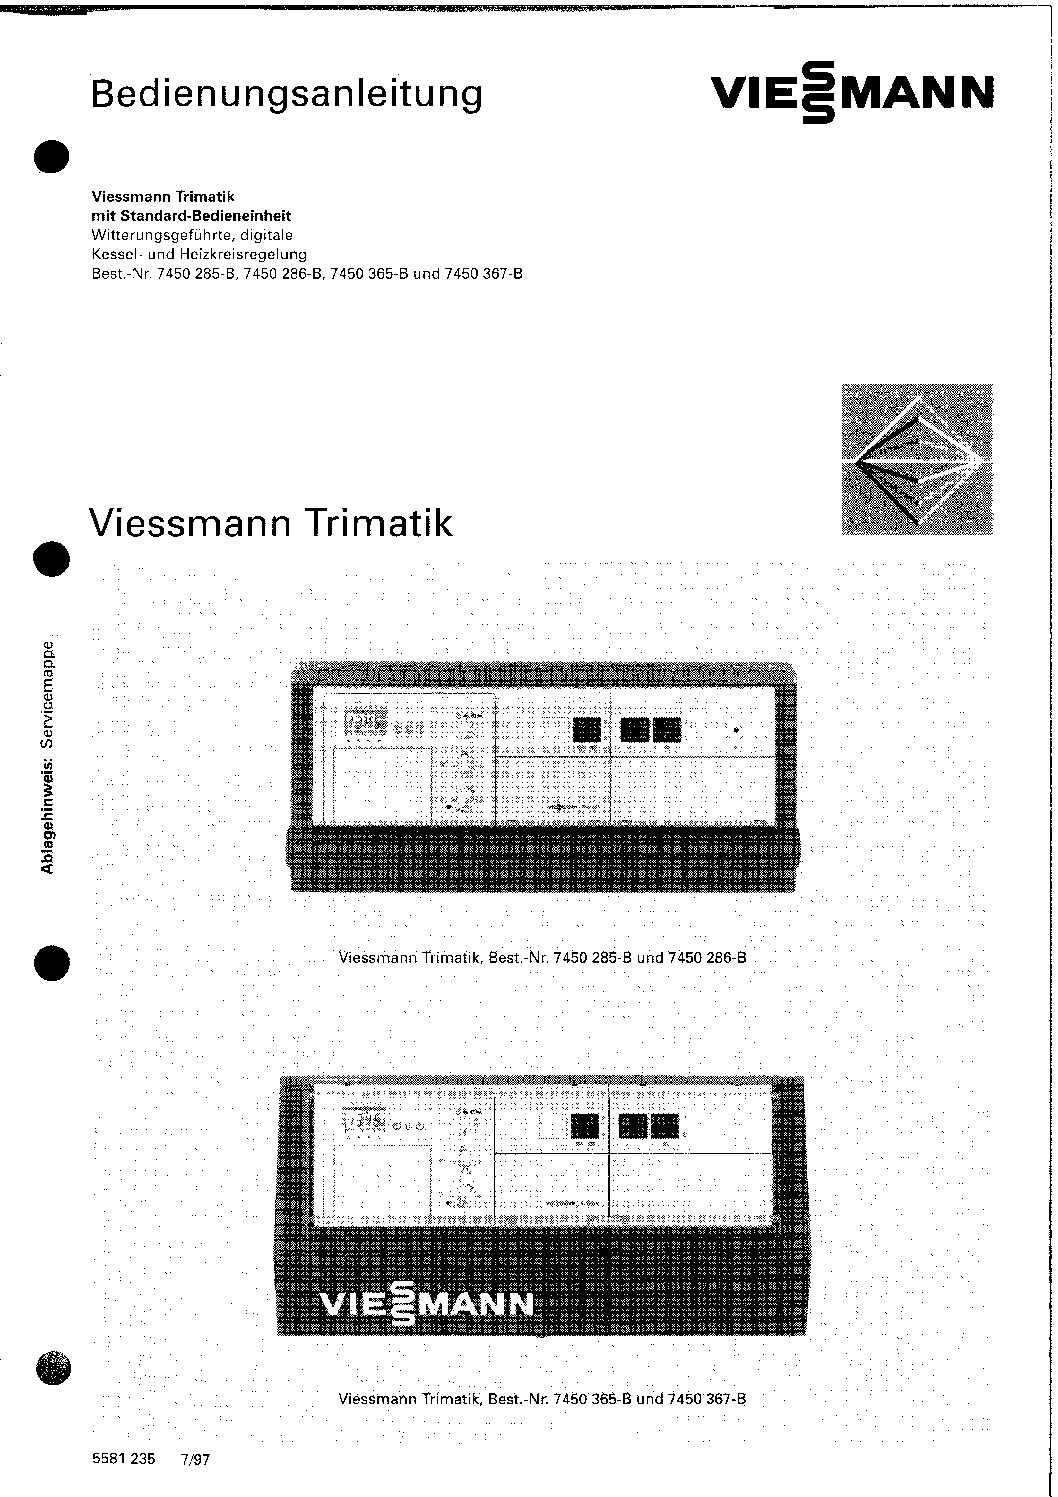 Viessmann vitola biferral baujahr 1992